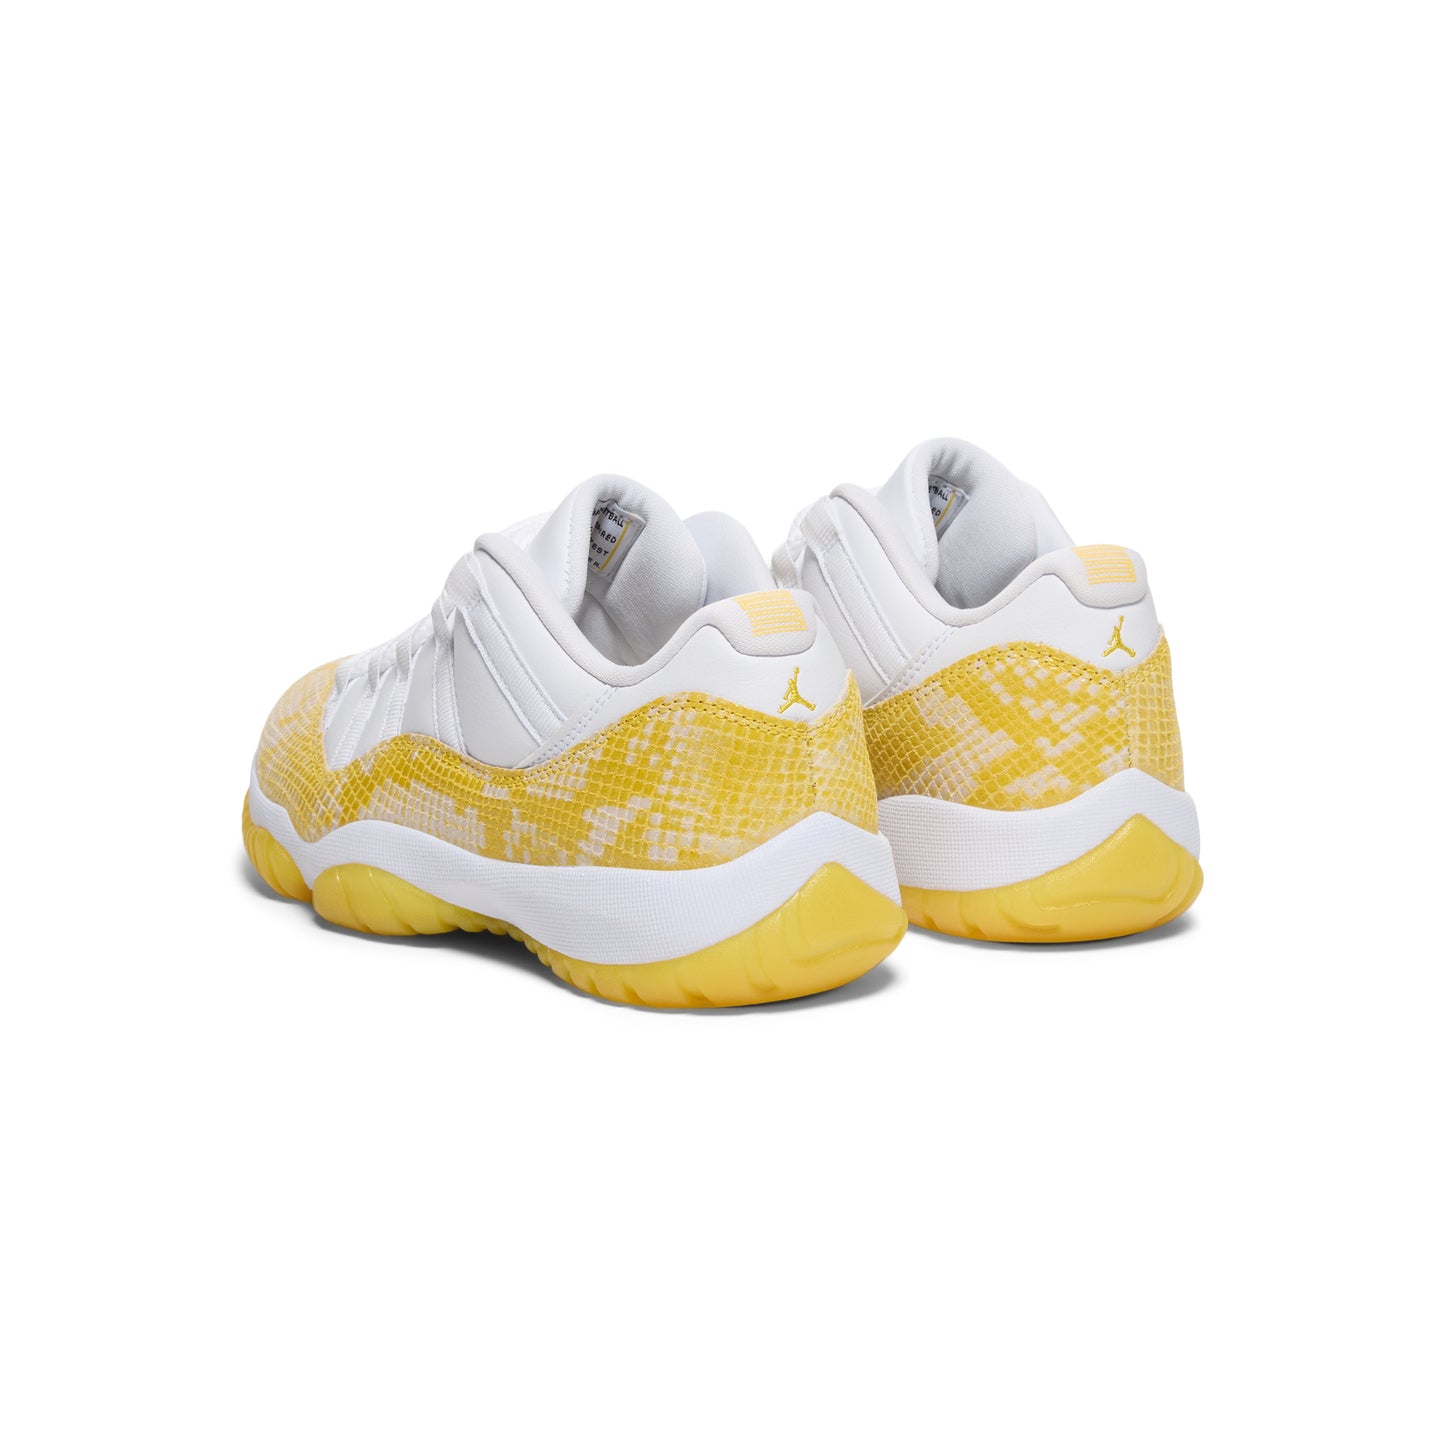 Air Jordan 11 Womens Retro Low (White/Tour Yellow)